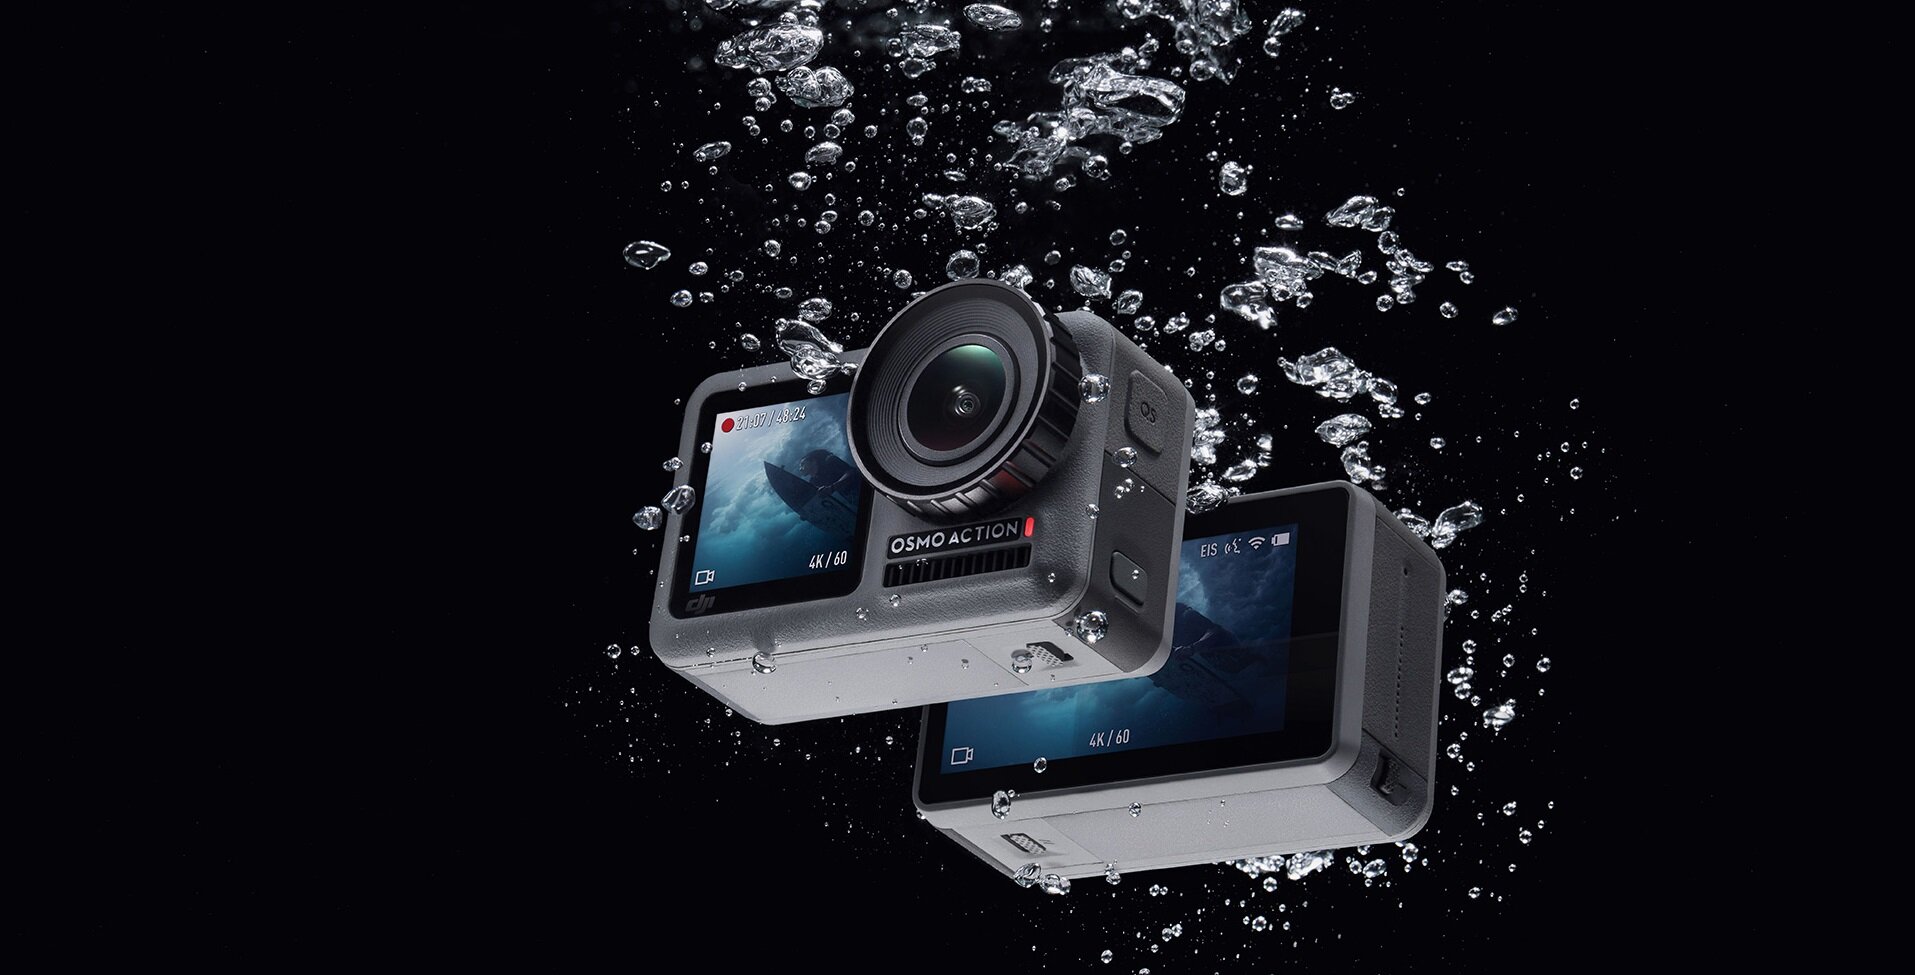 Η DJI θέλει να ανταγωνιστεί την GoPro με την action camera Osmo Action που έχει δύο οθόνες